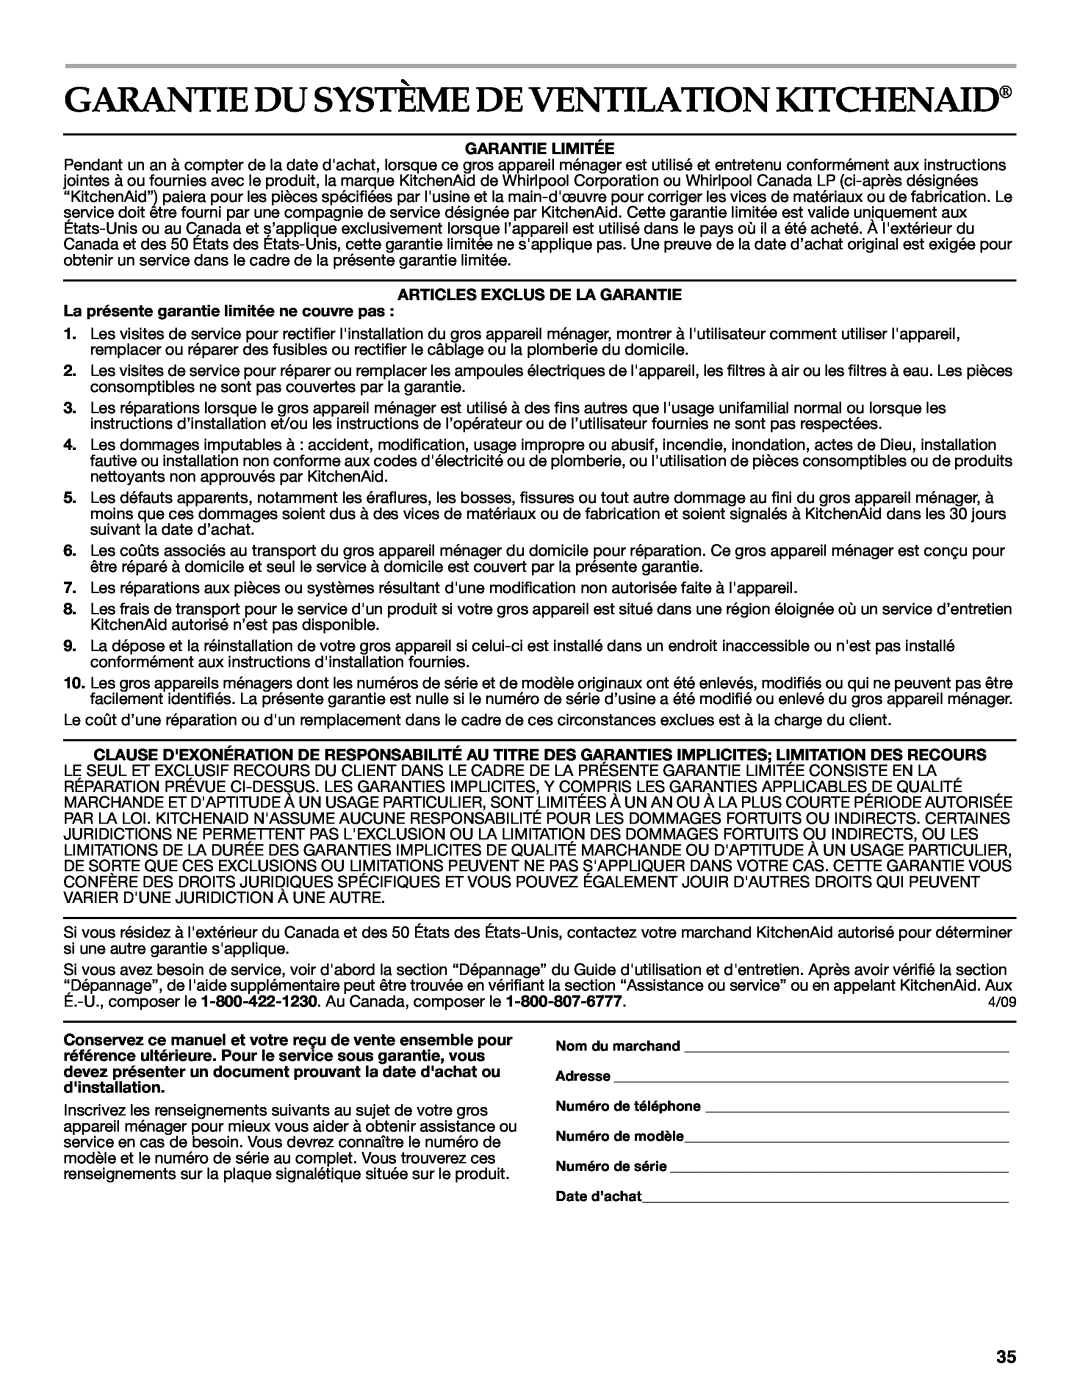 KitchenAid W10267109C Garantie Du Système De Ventilation Kitchenaid, Garantie Limitée, Articles Exclus De La Garantie 